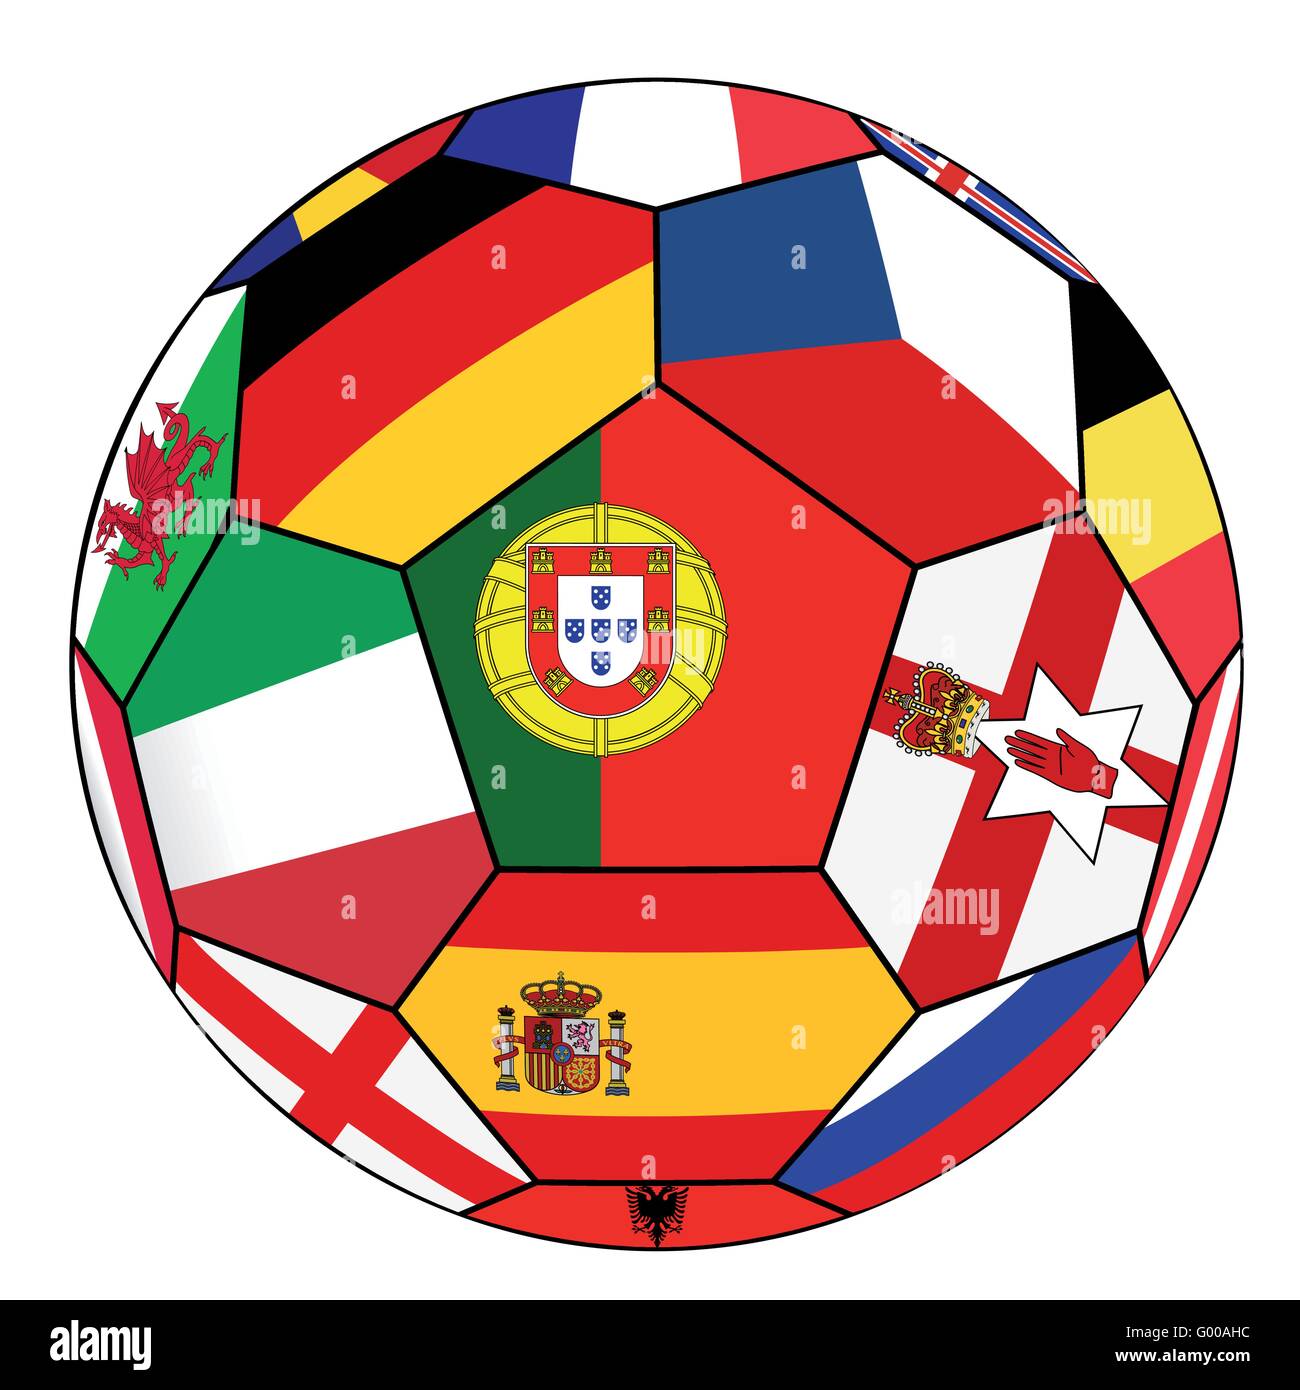 Pallone da calcio con la bandiera del Portogallo nel centro Illustrazione Vettoriale